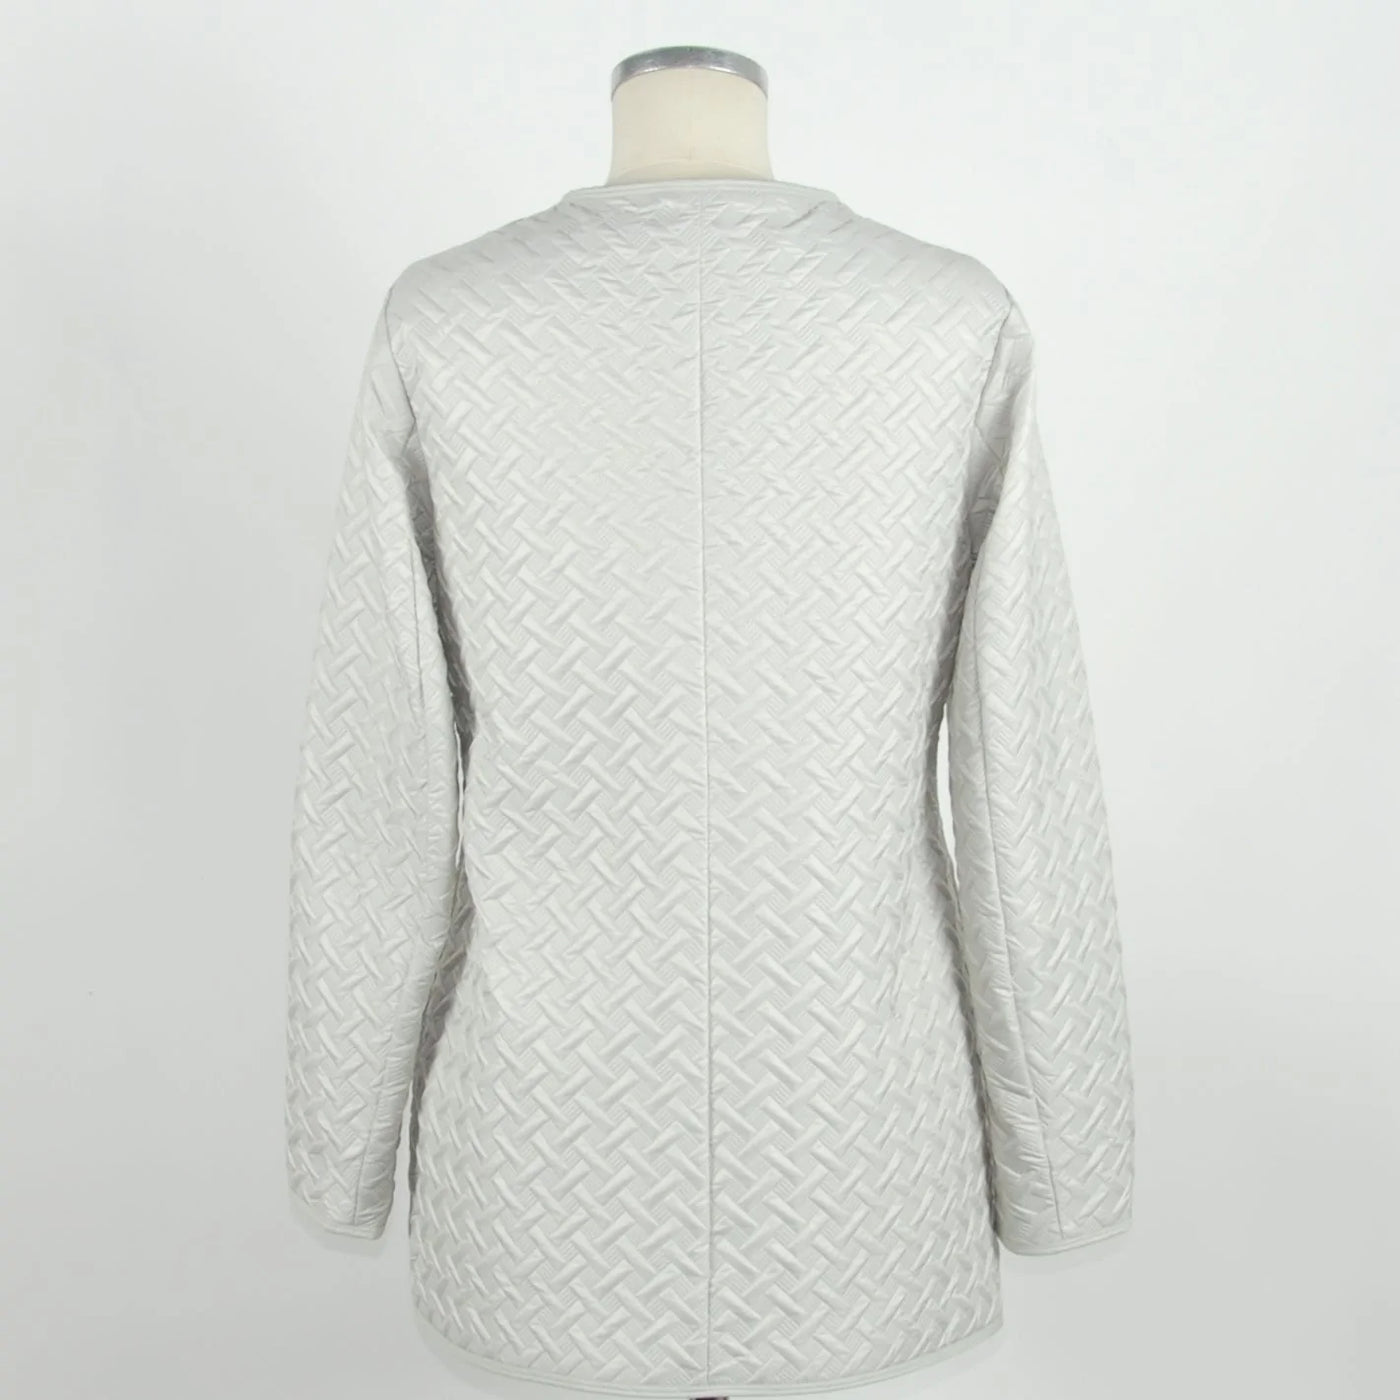 Emilio Roelli White Polyester Jackets & Coat Emilio Romanelli, feed-1, IT44|L, Jackets & Coats - Women - Clothing, White at SEYMAYKA